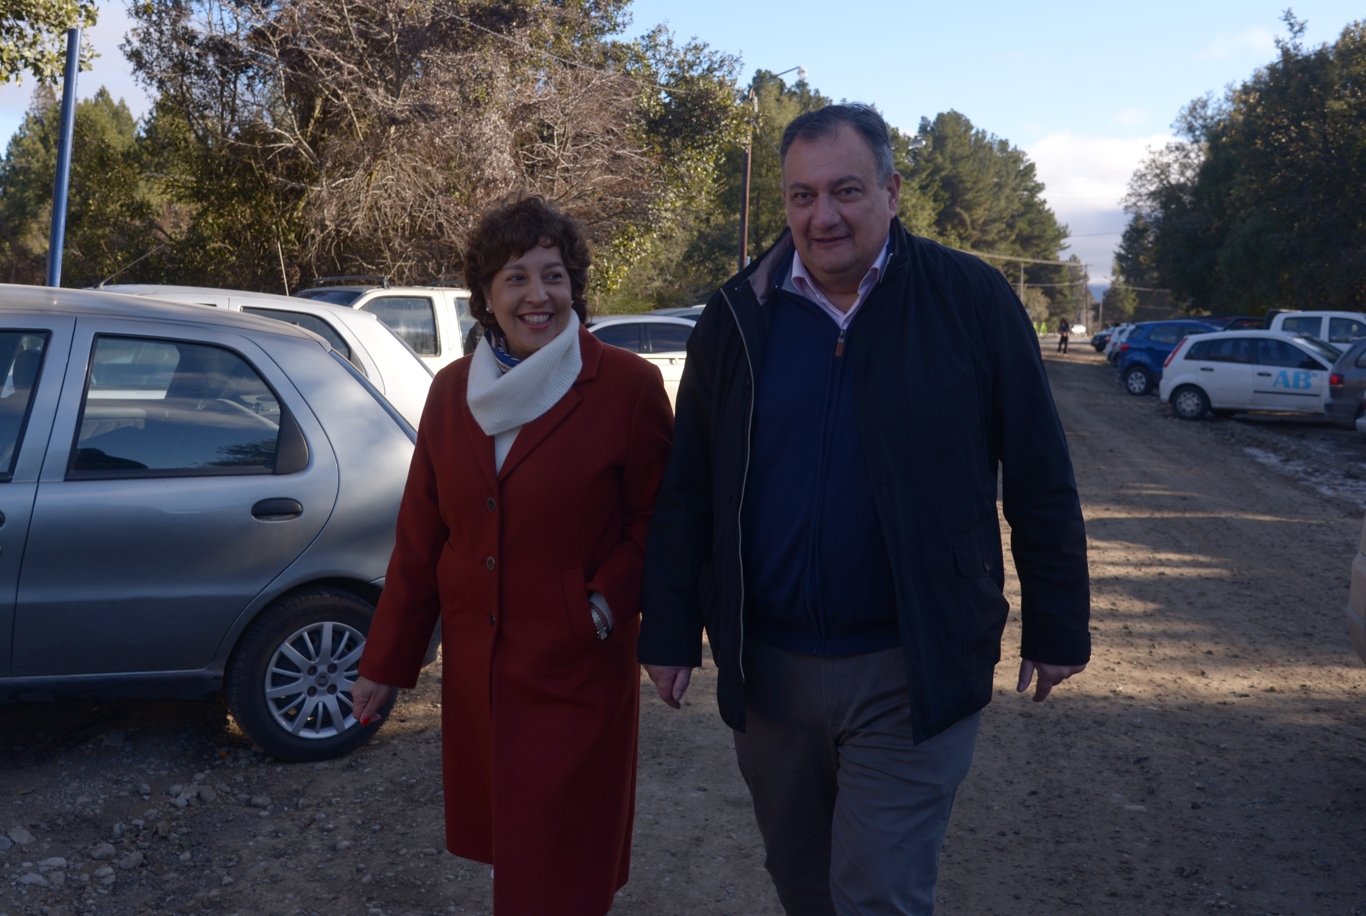 La gobernadora electa Arabela Carreras acompañó al intendente Gustavo Gennuso al votar en Bariloche. Foto: Marcelo Martínez